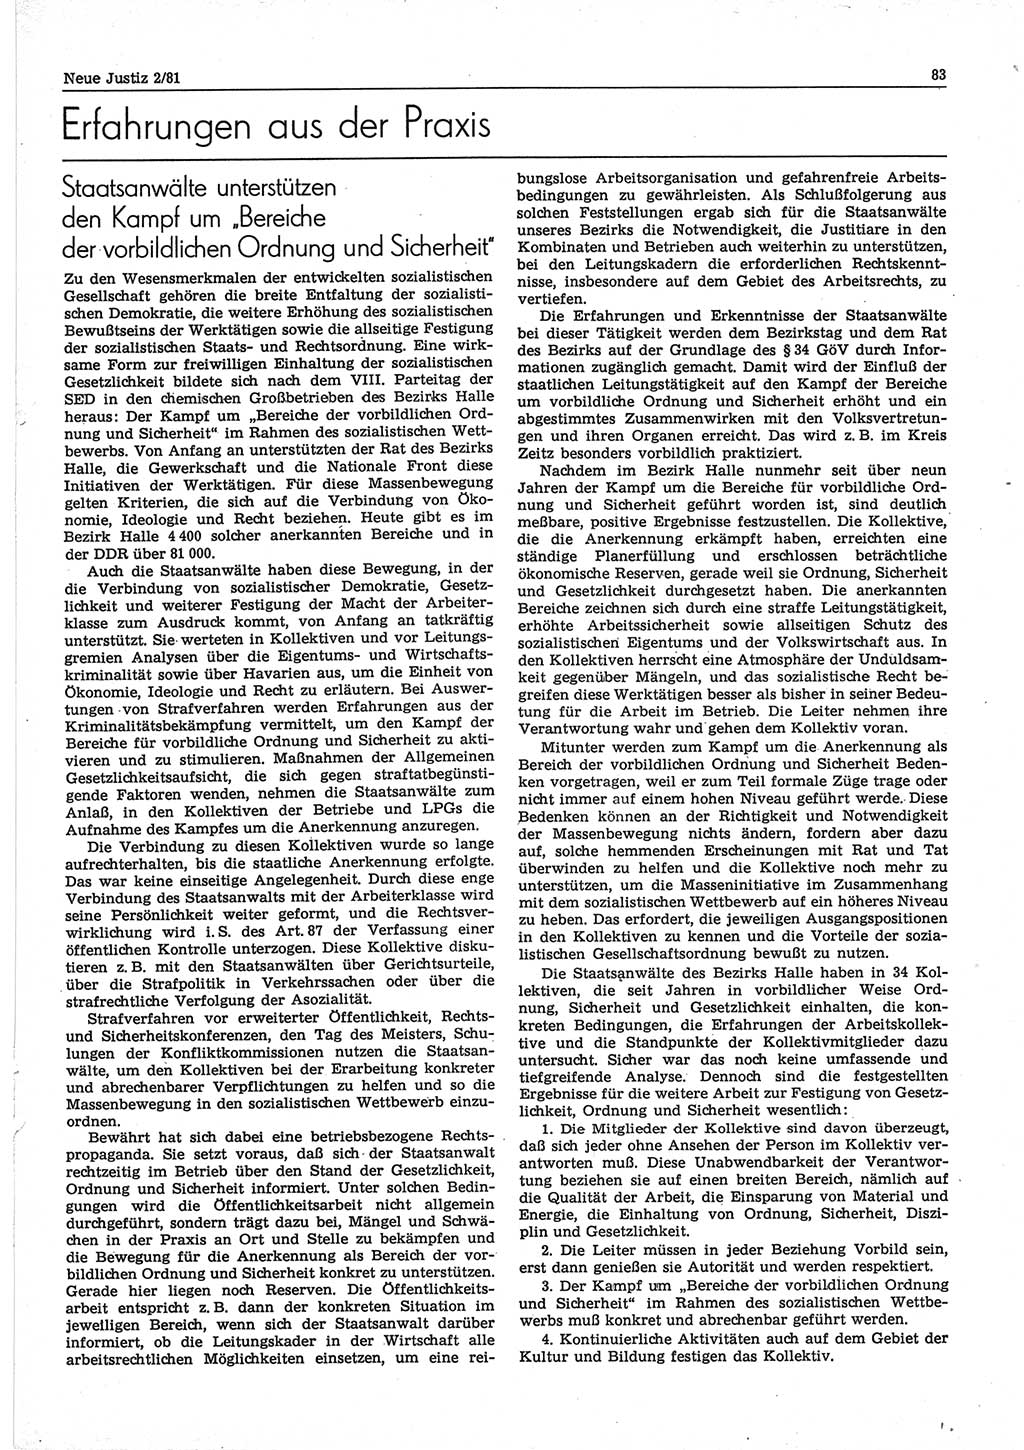 Neue Justiz (NJ), Zeitschrift für sozialistisches Recht und Gesetzlichkeit [Deutsche Demokratische Republik (DDR)], 35. Jahrgang 1981, Seite 83 (NJ DDR 1981, S. 83)